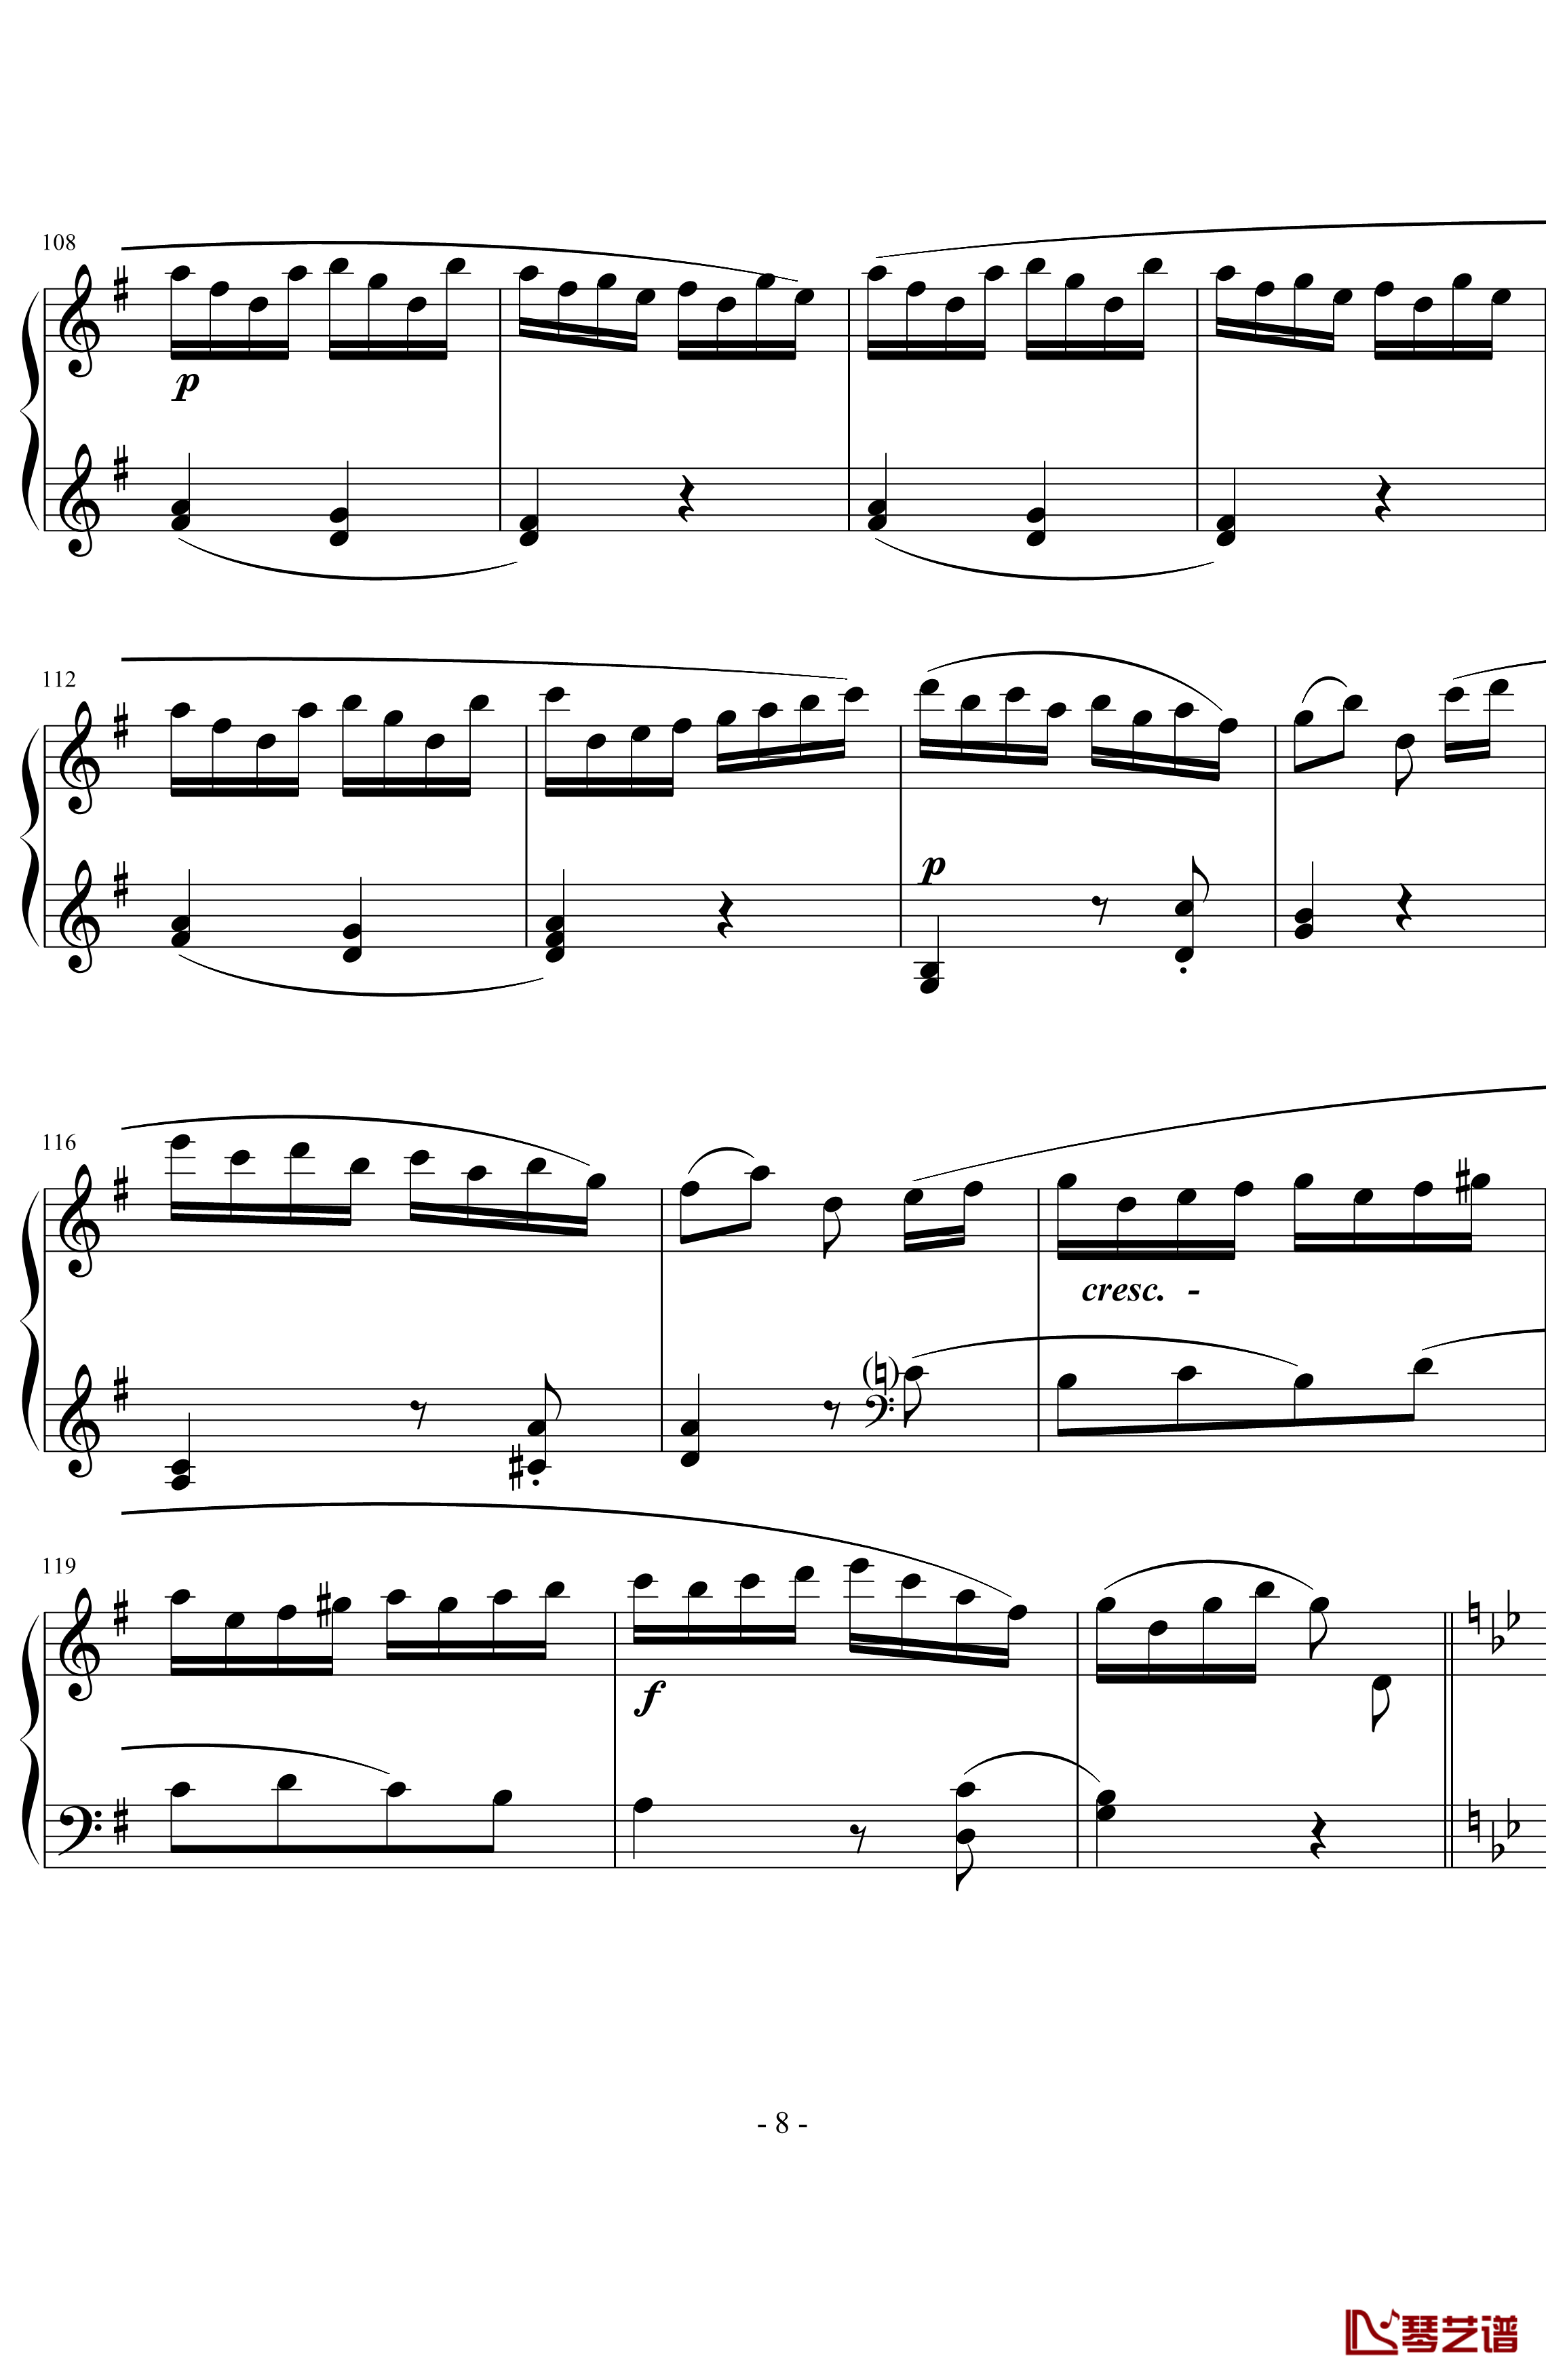 吉普赛回旋曲钢琴谱-海顿8